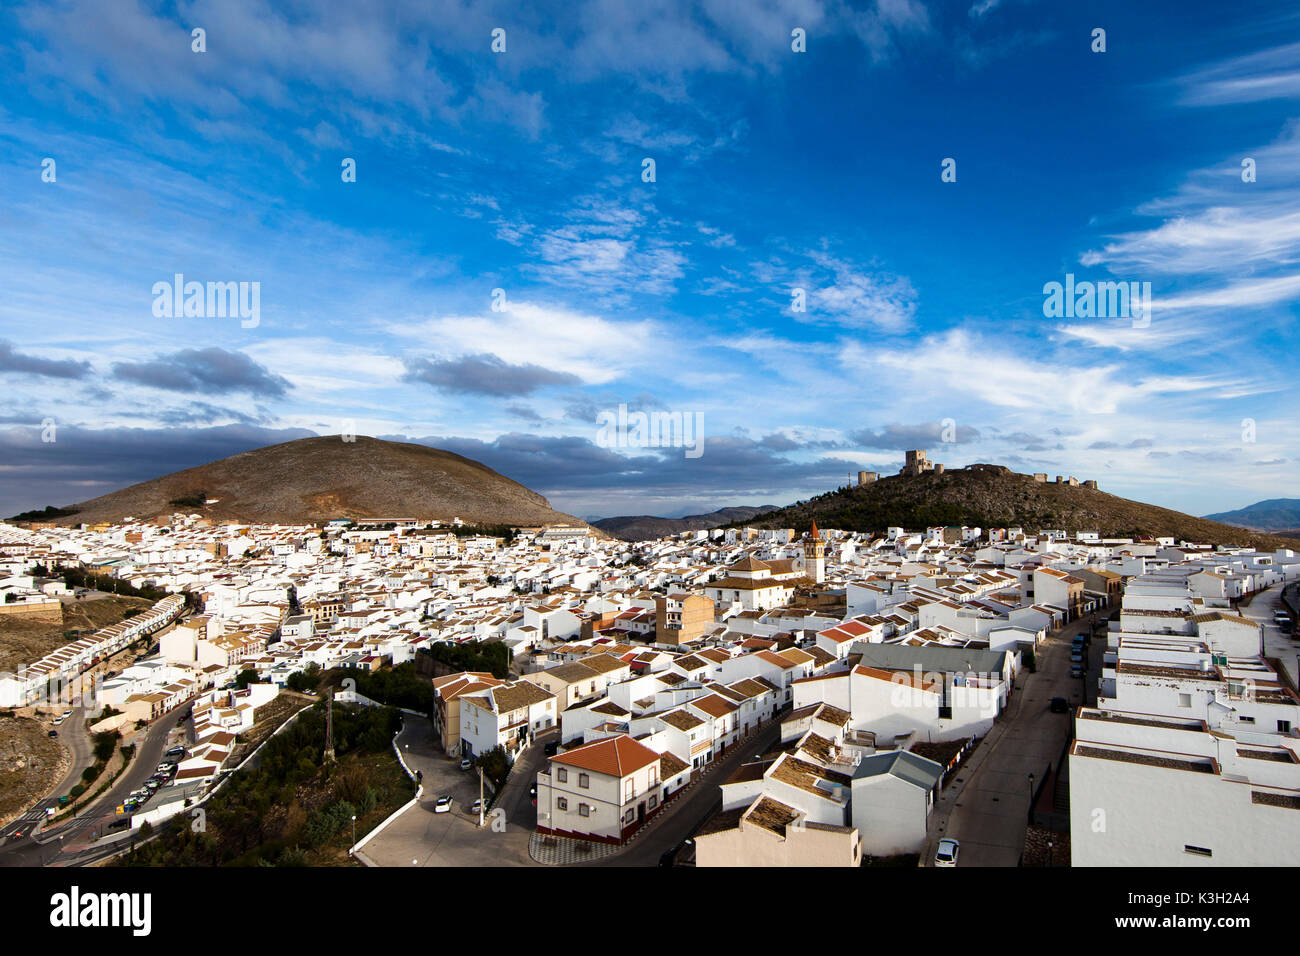 Teba, Castello de la Estrella, mountain village, Andalusia, aerial picture, province Malaga, Spain Stock Photo